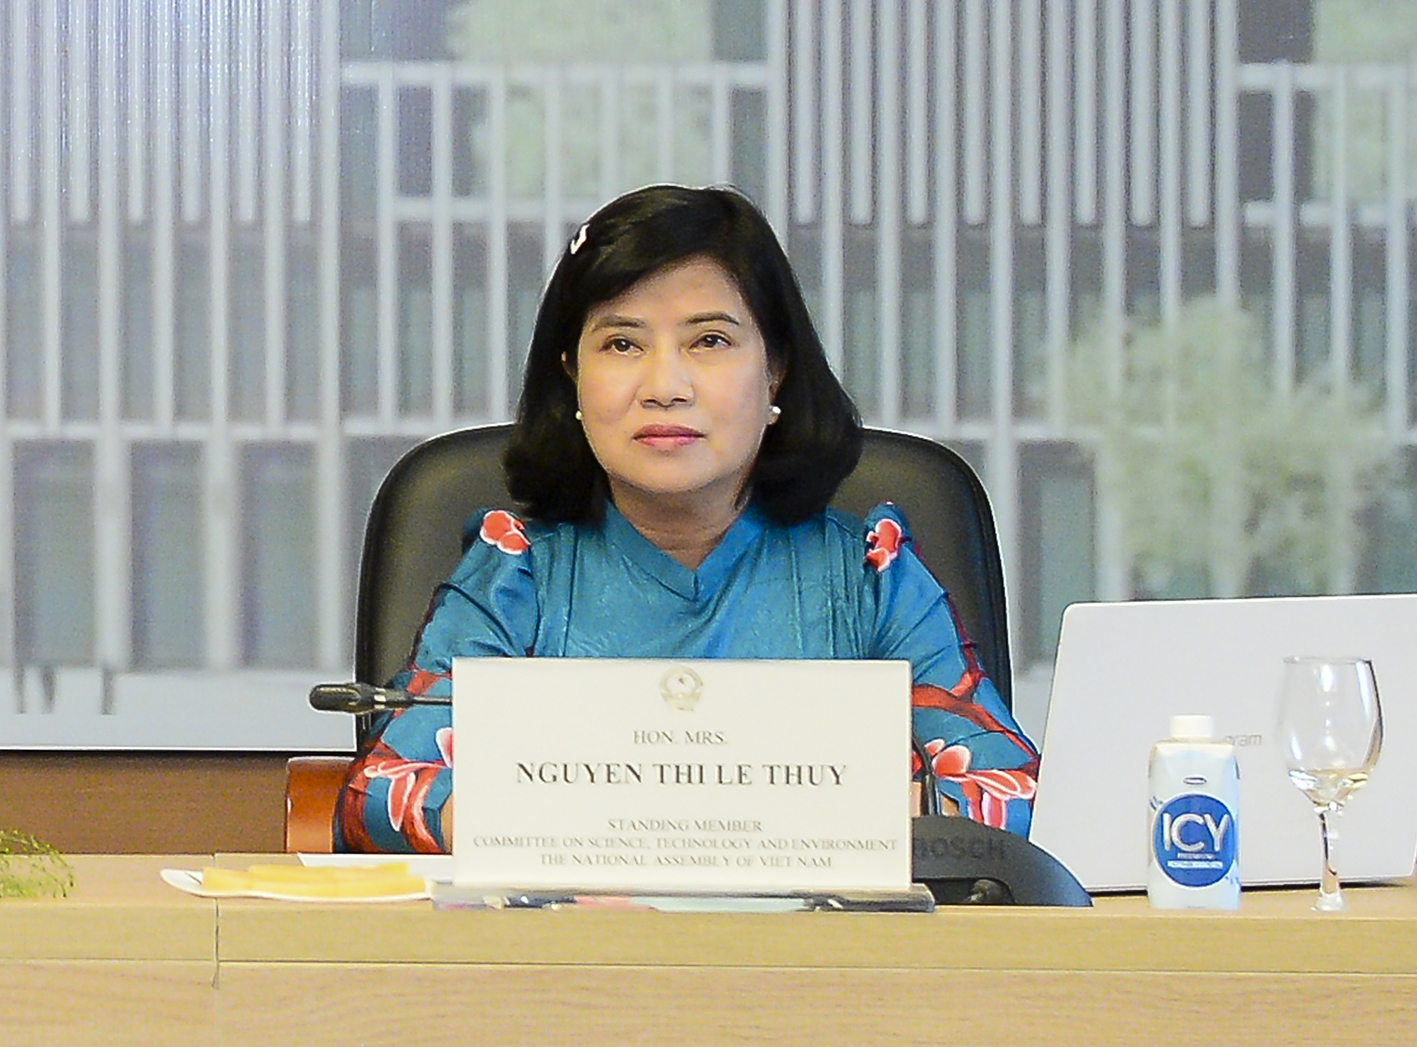 Ủy viên Thường trực Ủy ban Khoa học, Công nghệ và Môi trường Nguyễn Thị Lệ Thủy chia sẻ kinh nghiệm của Quốc hội Việt Nam trong thực hiện các mục tiêu ứng phó với biến đổi khí hậu